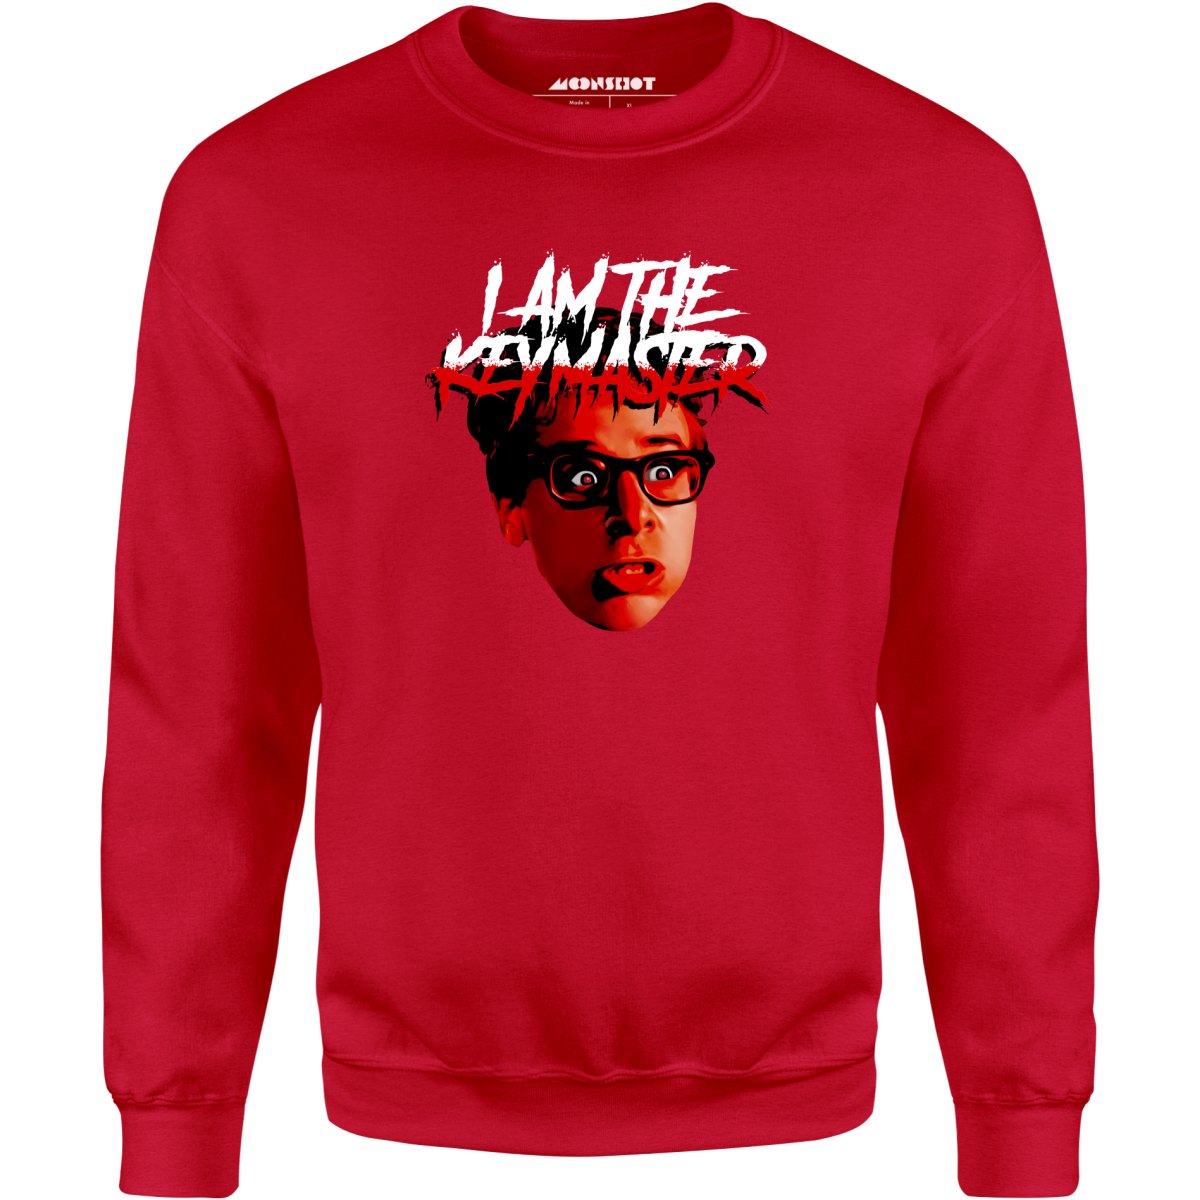 I am the Keymaster - Unisex Sweatshirt